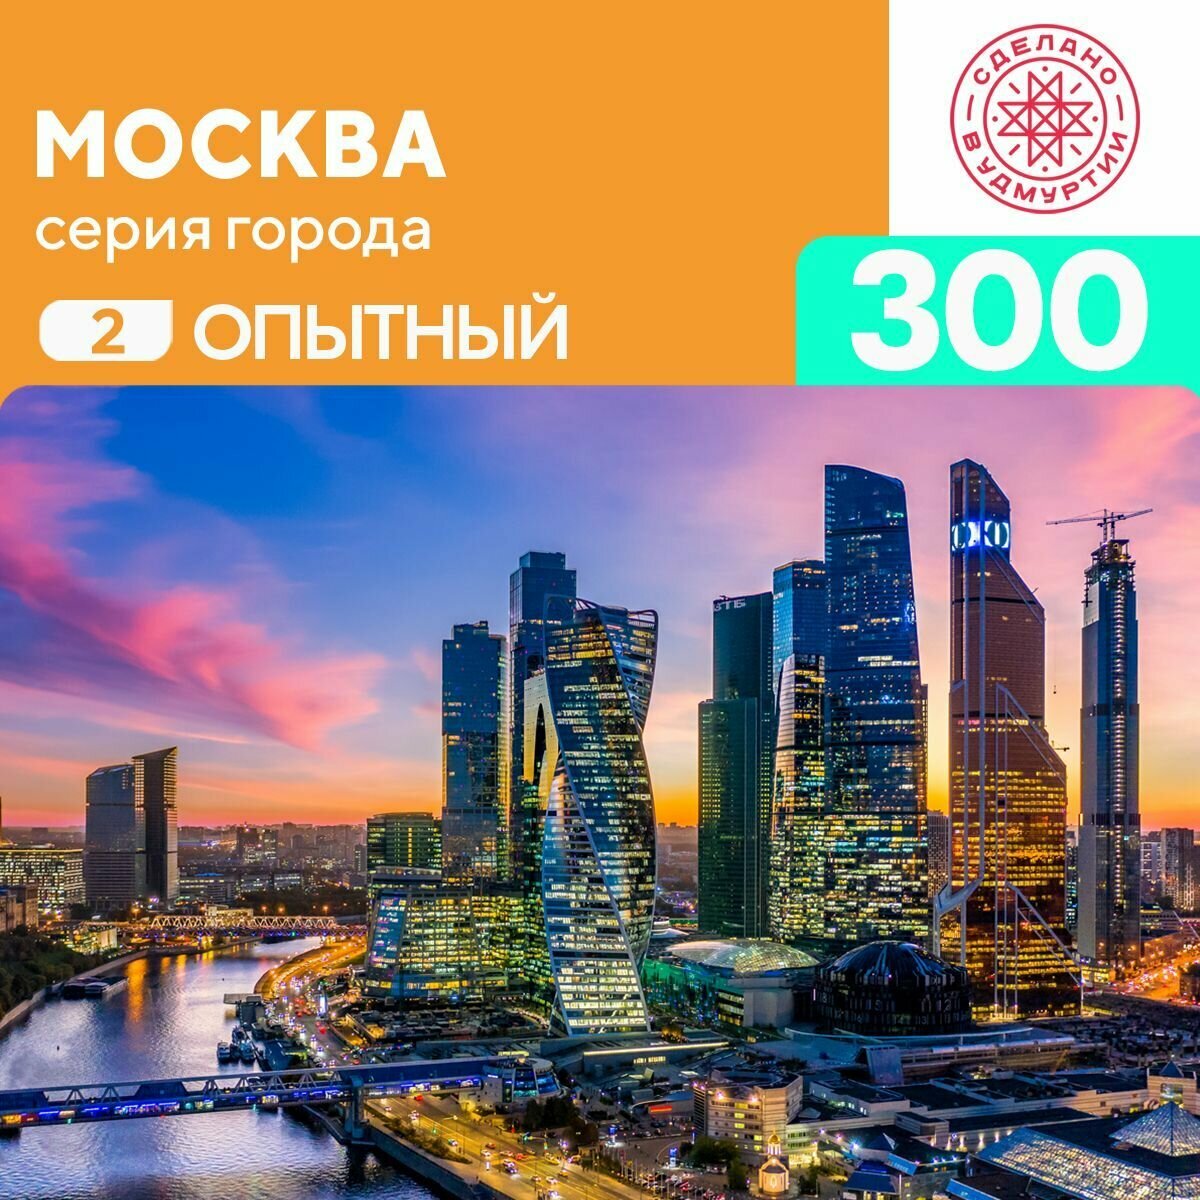 Пазл Москва 300 деталей Опытный